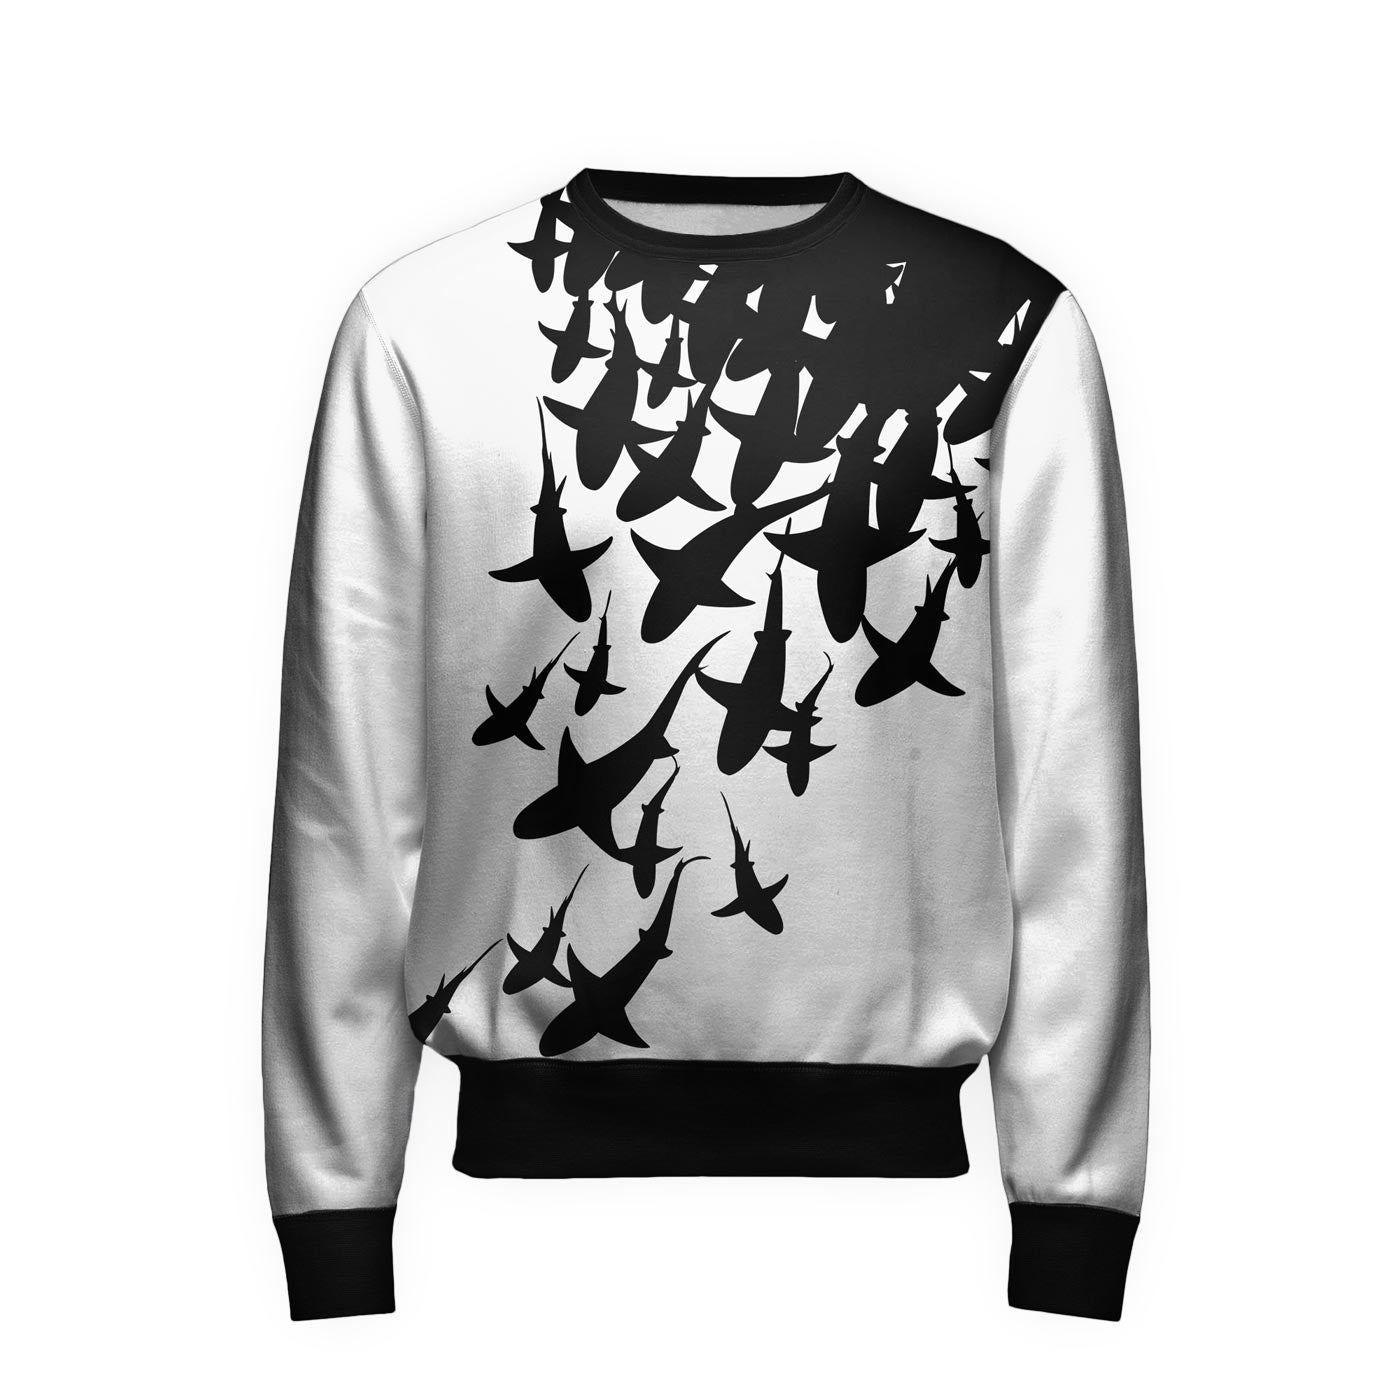 Swarm Of Sharks Sweatshirt